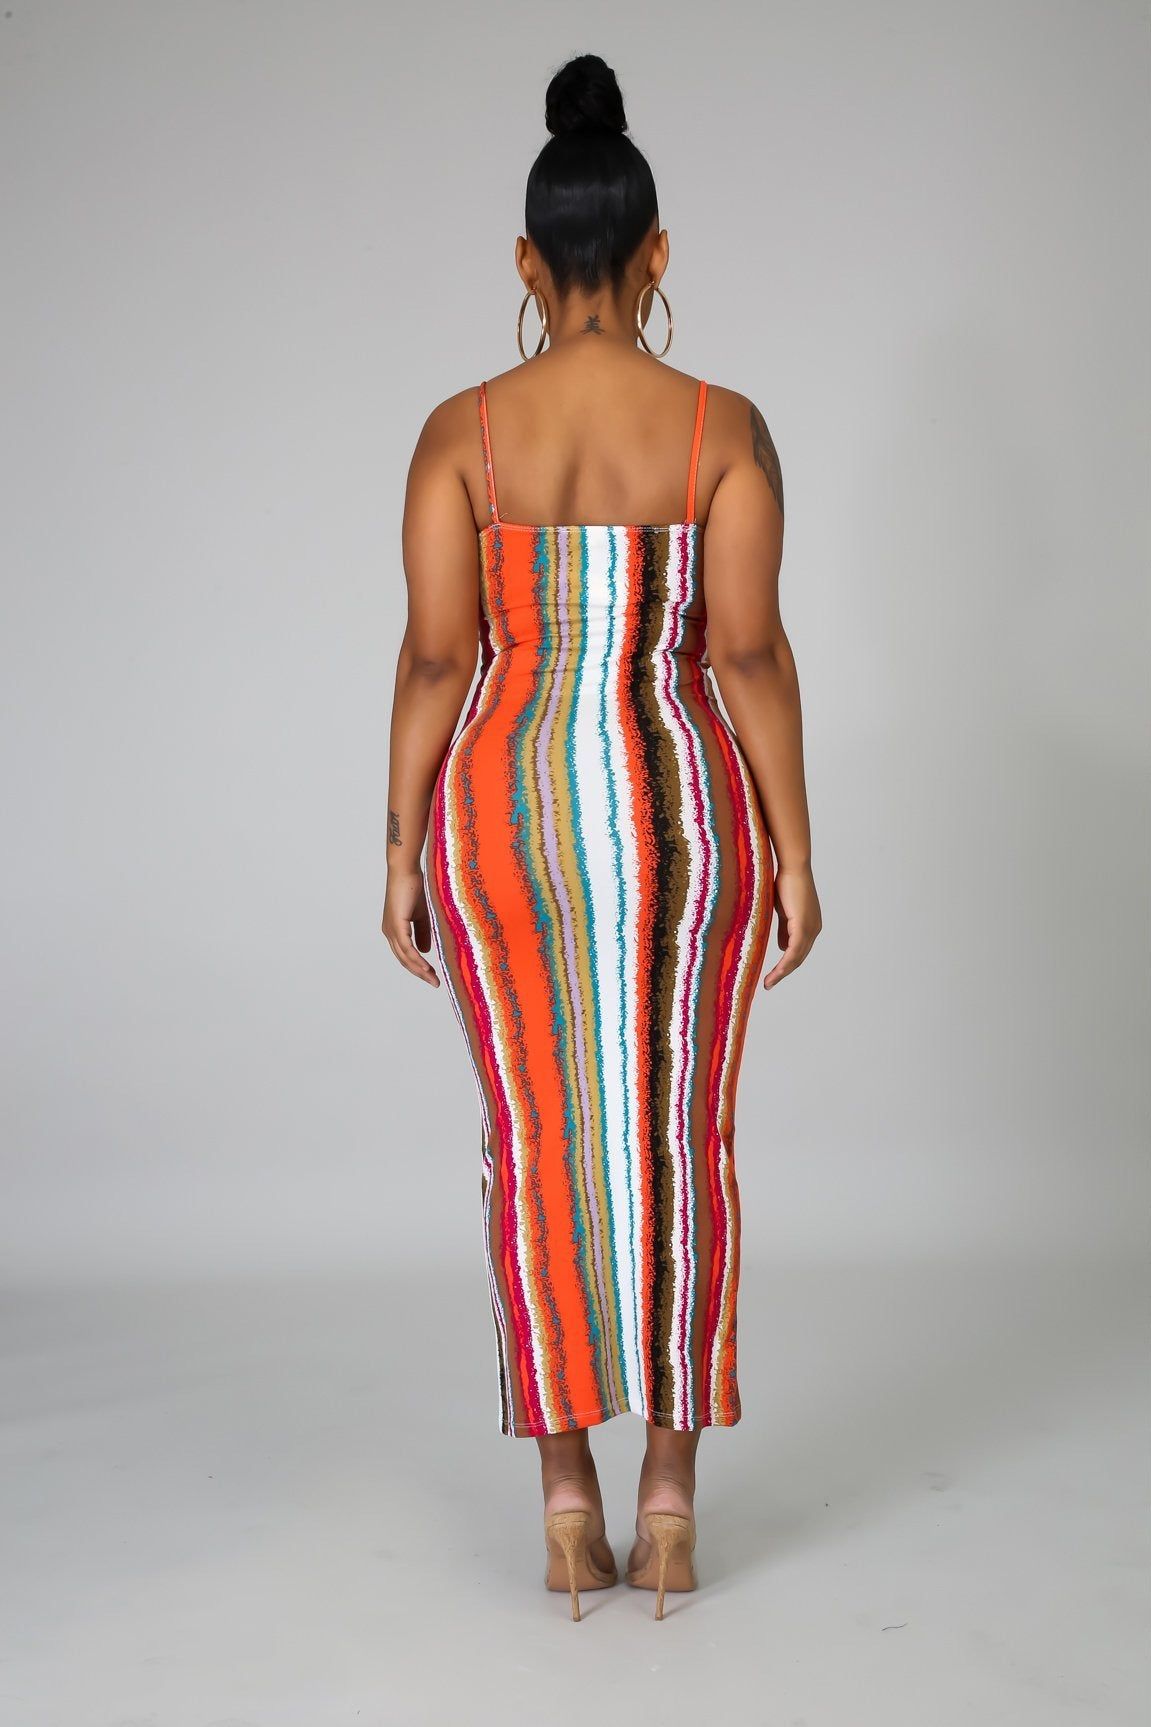 Striped Art Dress